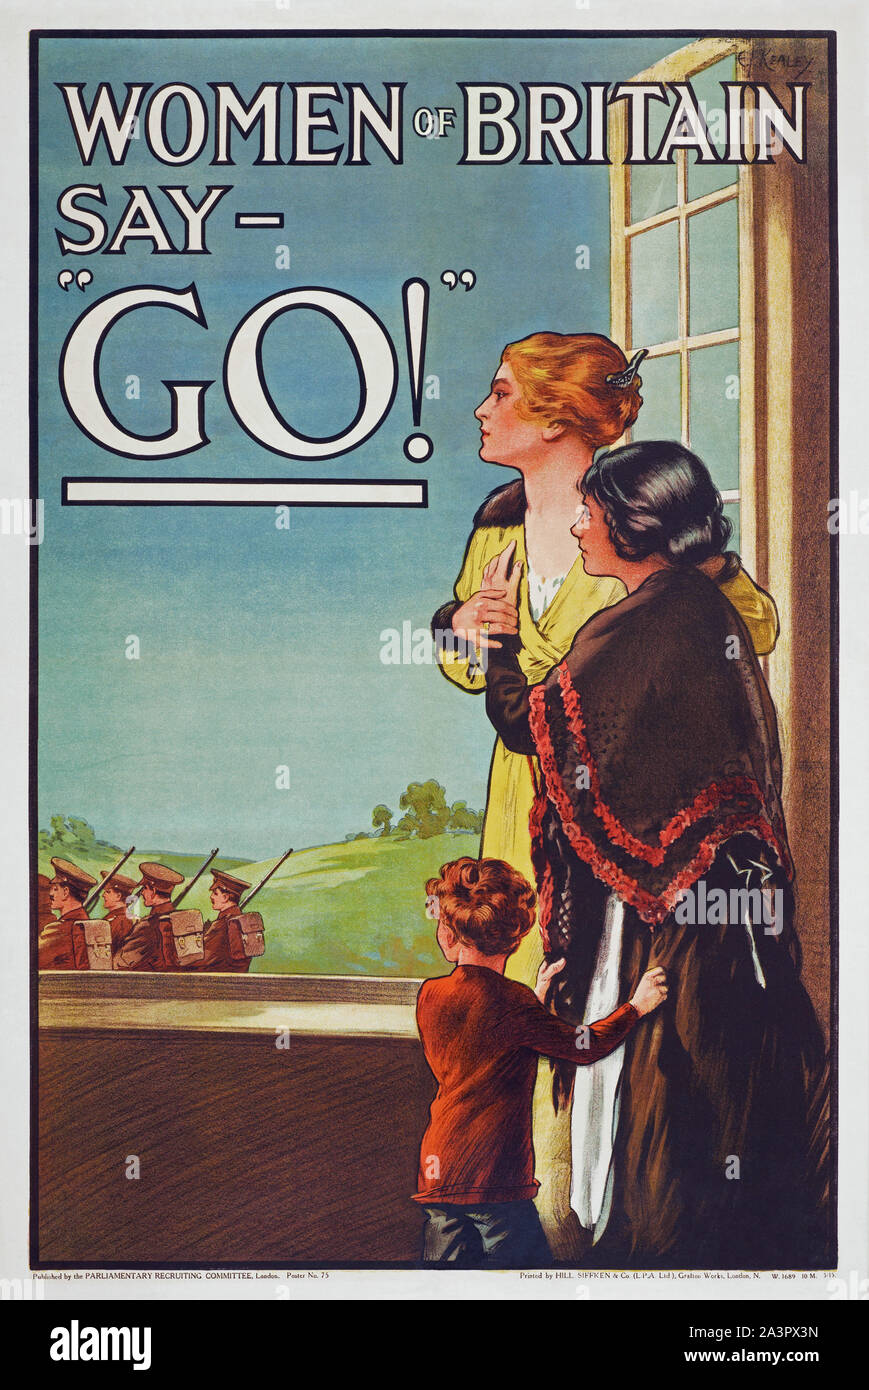 Les femmes de l'affiche de la Grande-Bretagne dire "Go !" par Hill, Siffken & Co. (L.P.A. Ltd.), E J Kealey, année 1914, Emplacement Collection Privée Banque D'Images